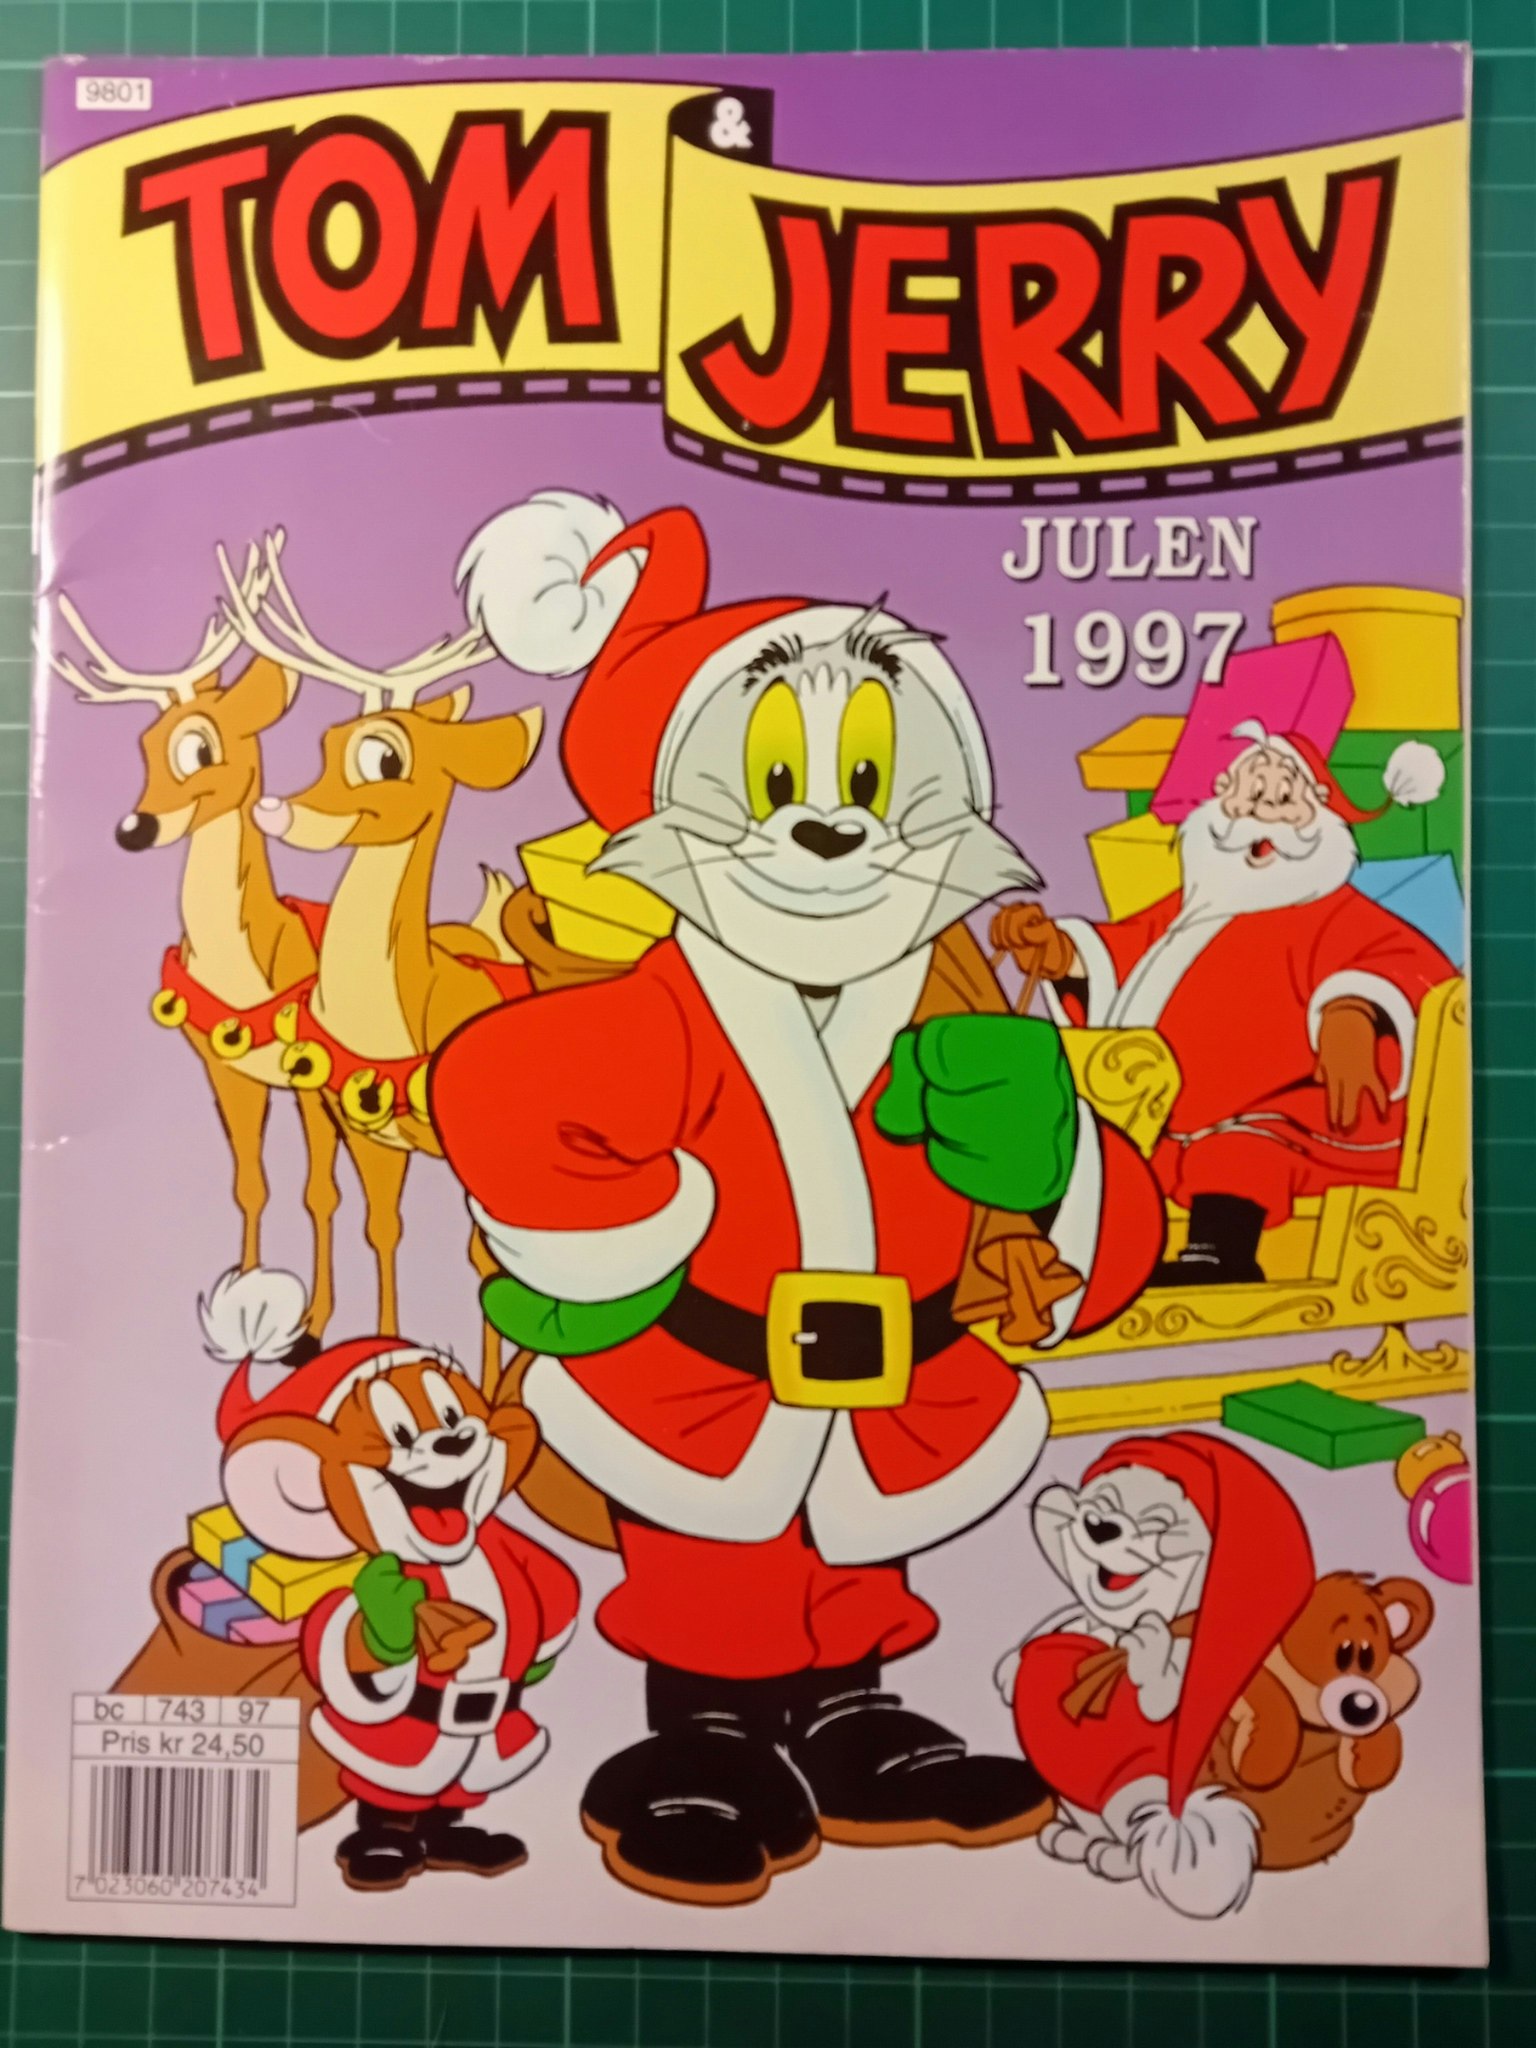 Tom & Jerry julen 1997